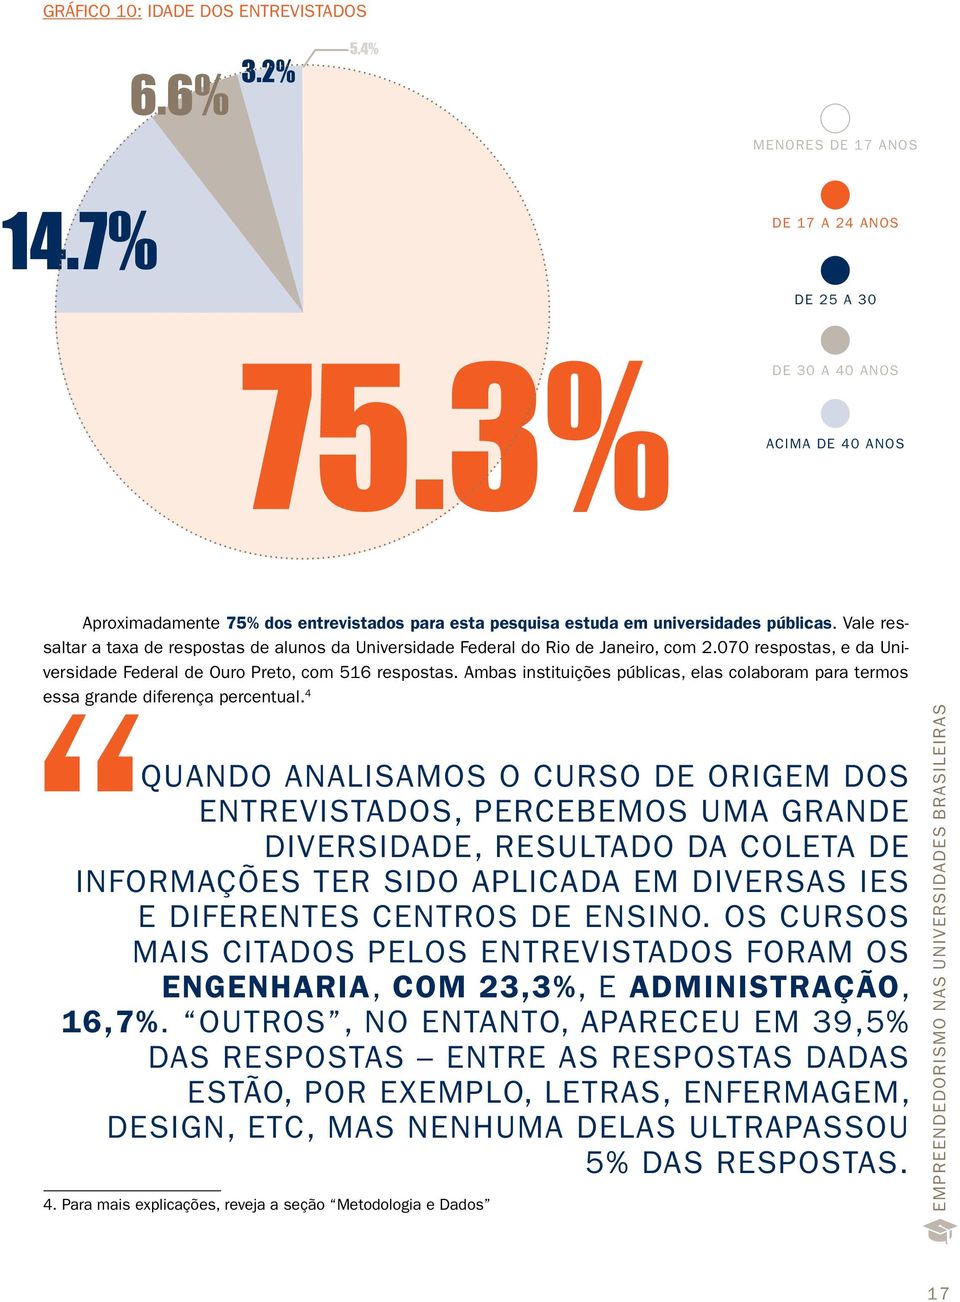 Vale ressaltar a taxa de respostas de alunos da Universidade Federal do Rio de Janeiro, com 2.070 respostas, e da Universidade Federal de Ouro Preto, com 516 respostas.